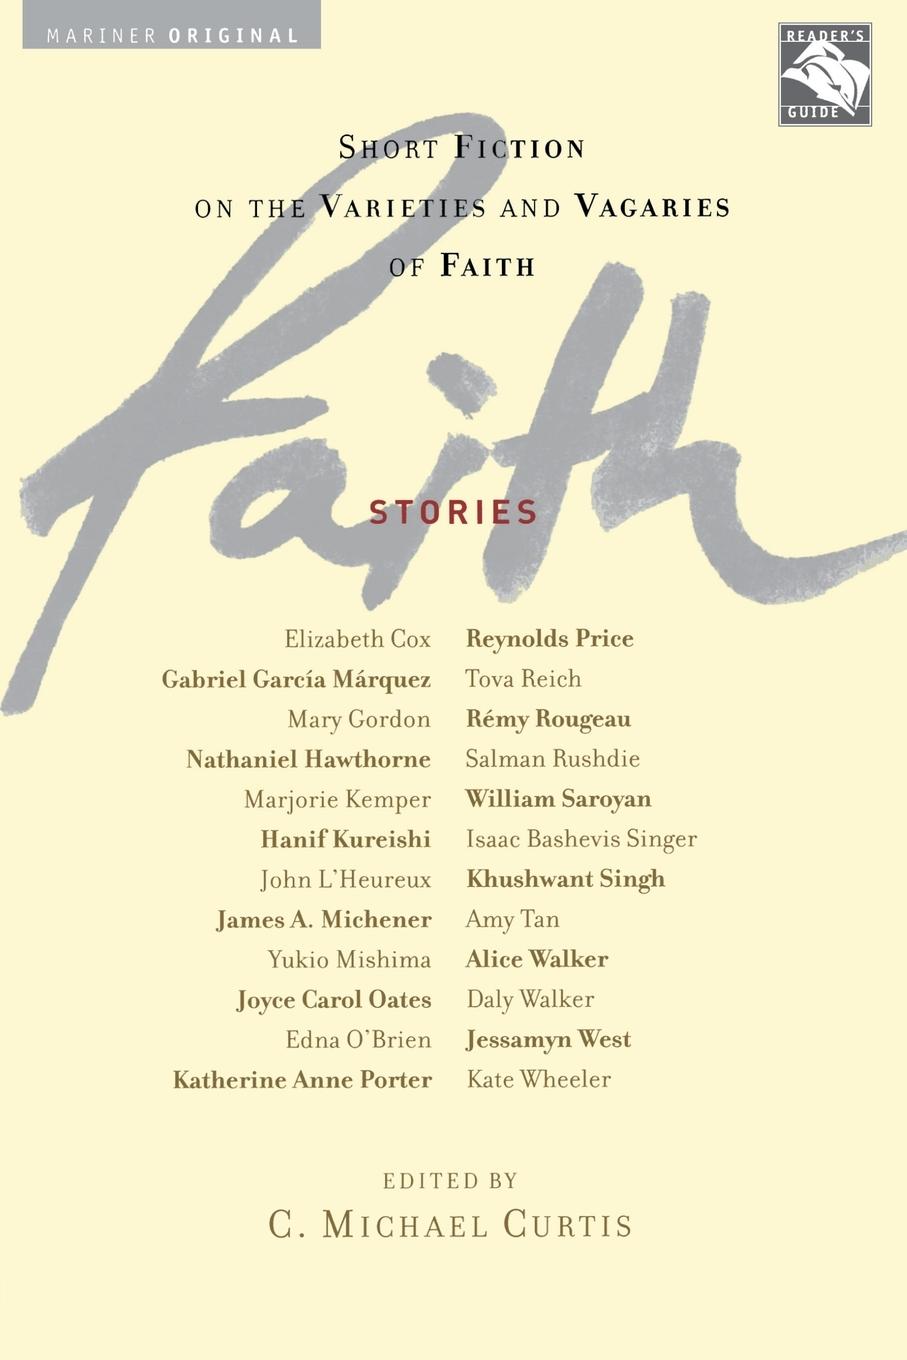 Faith - Curtis, C. Michael